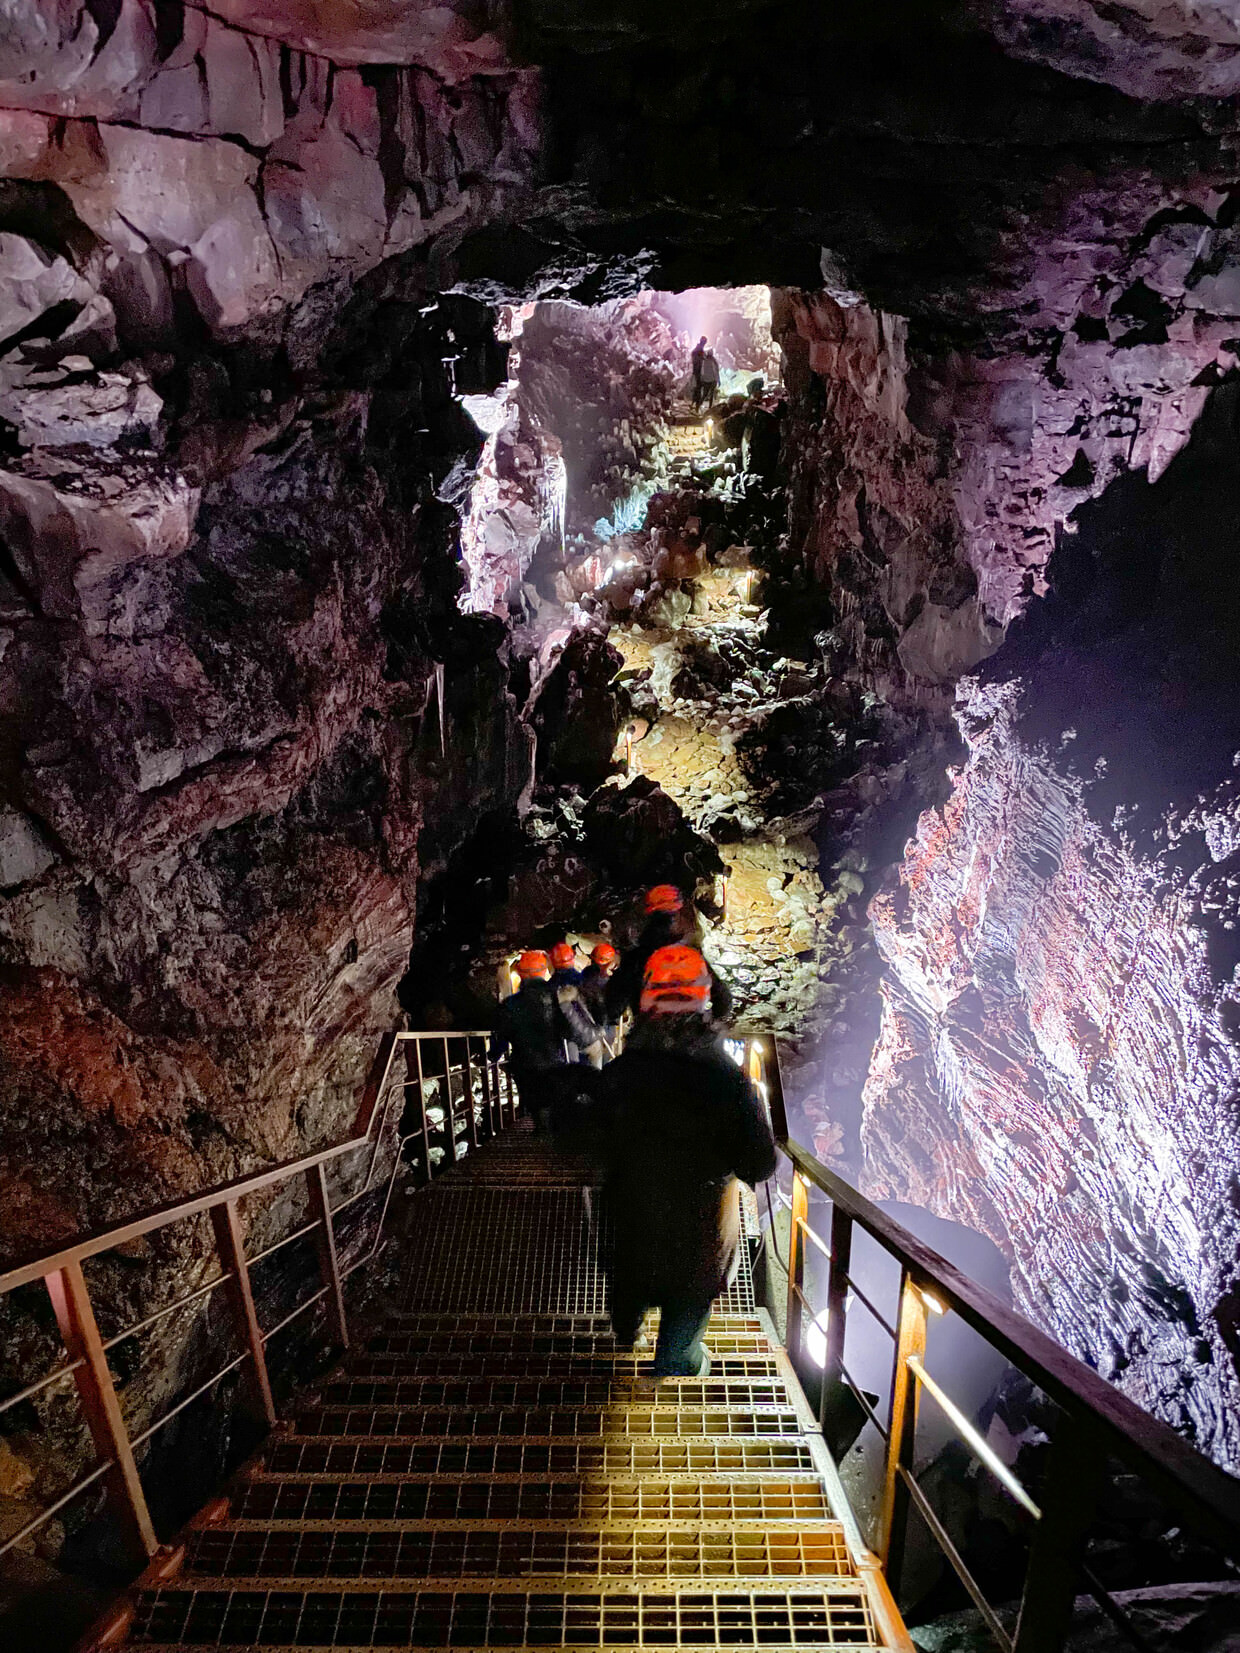 Descending into the Lava Tunnel